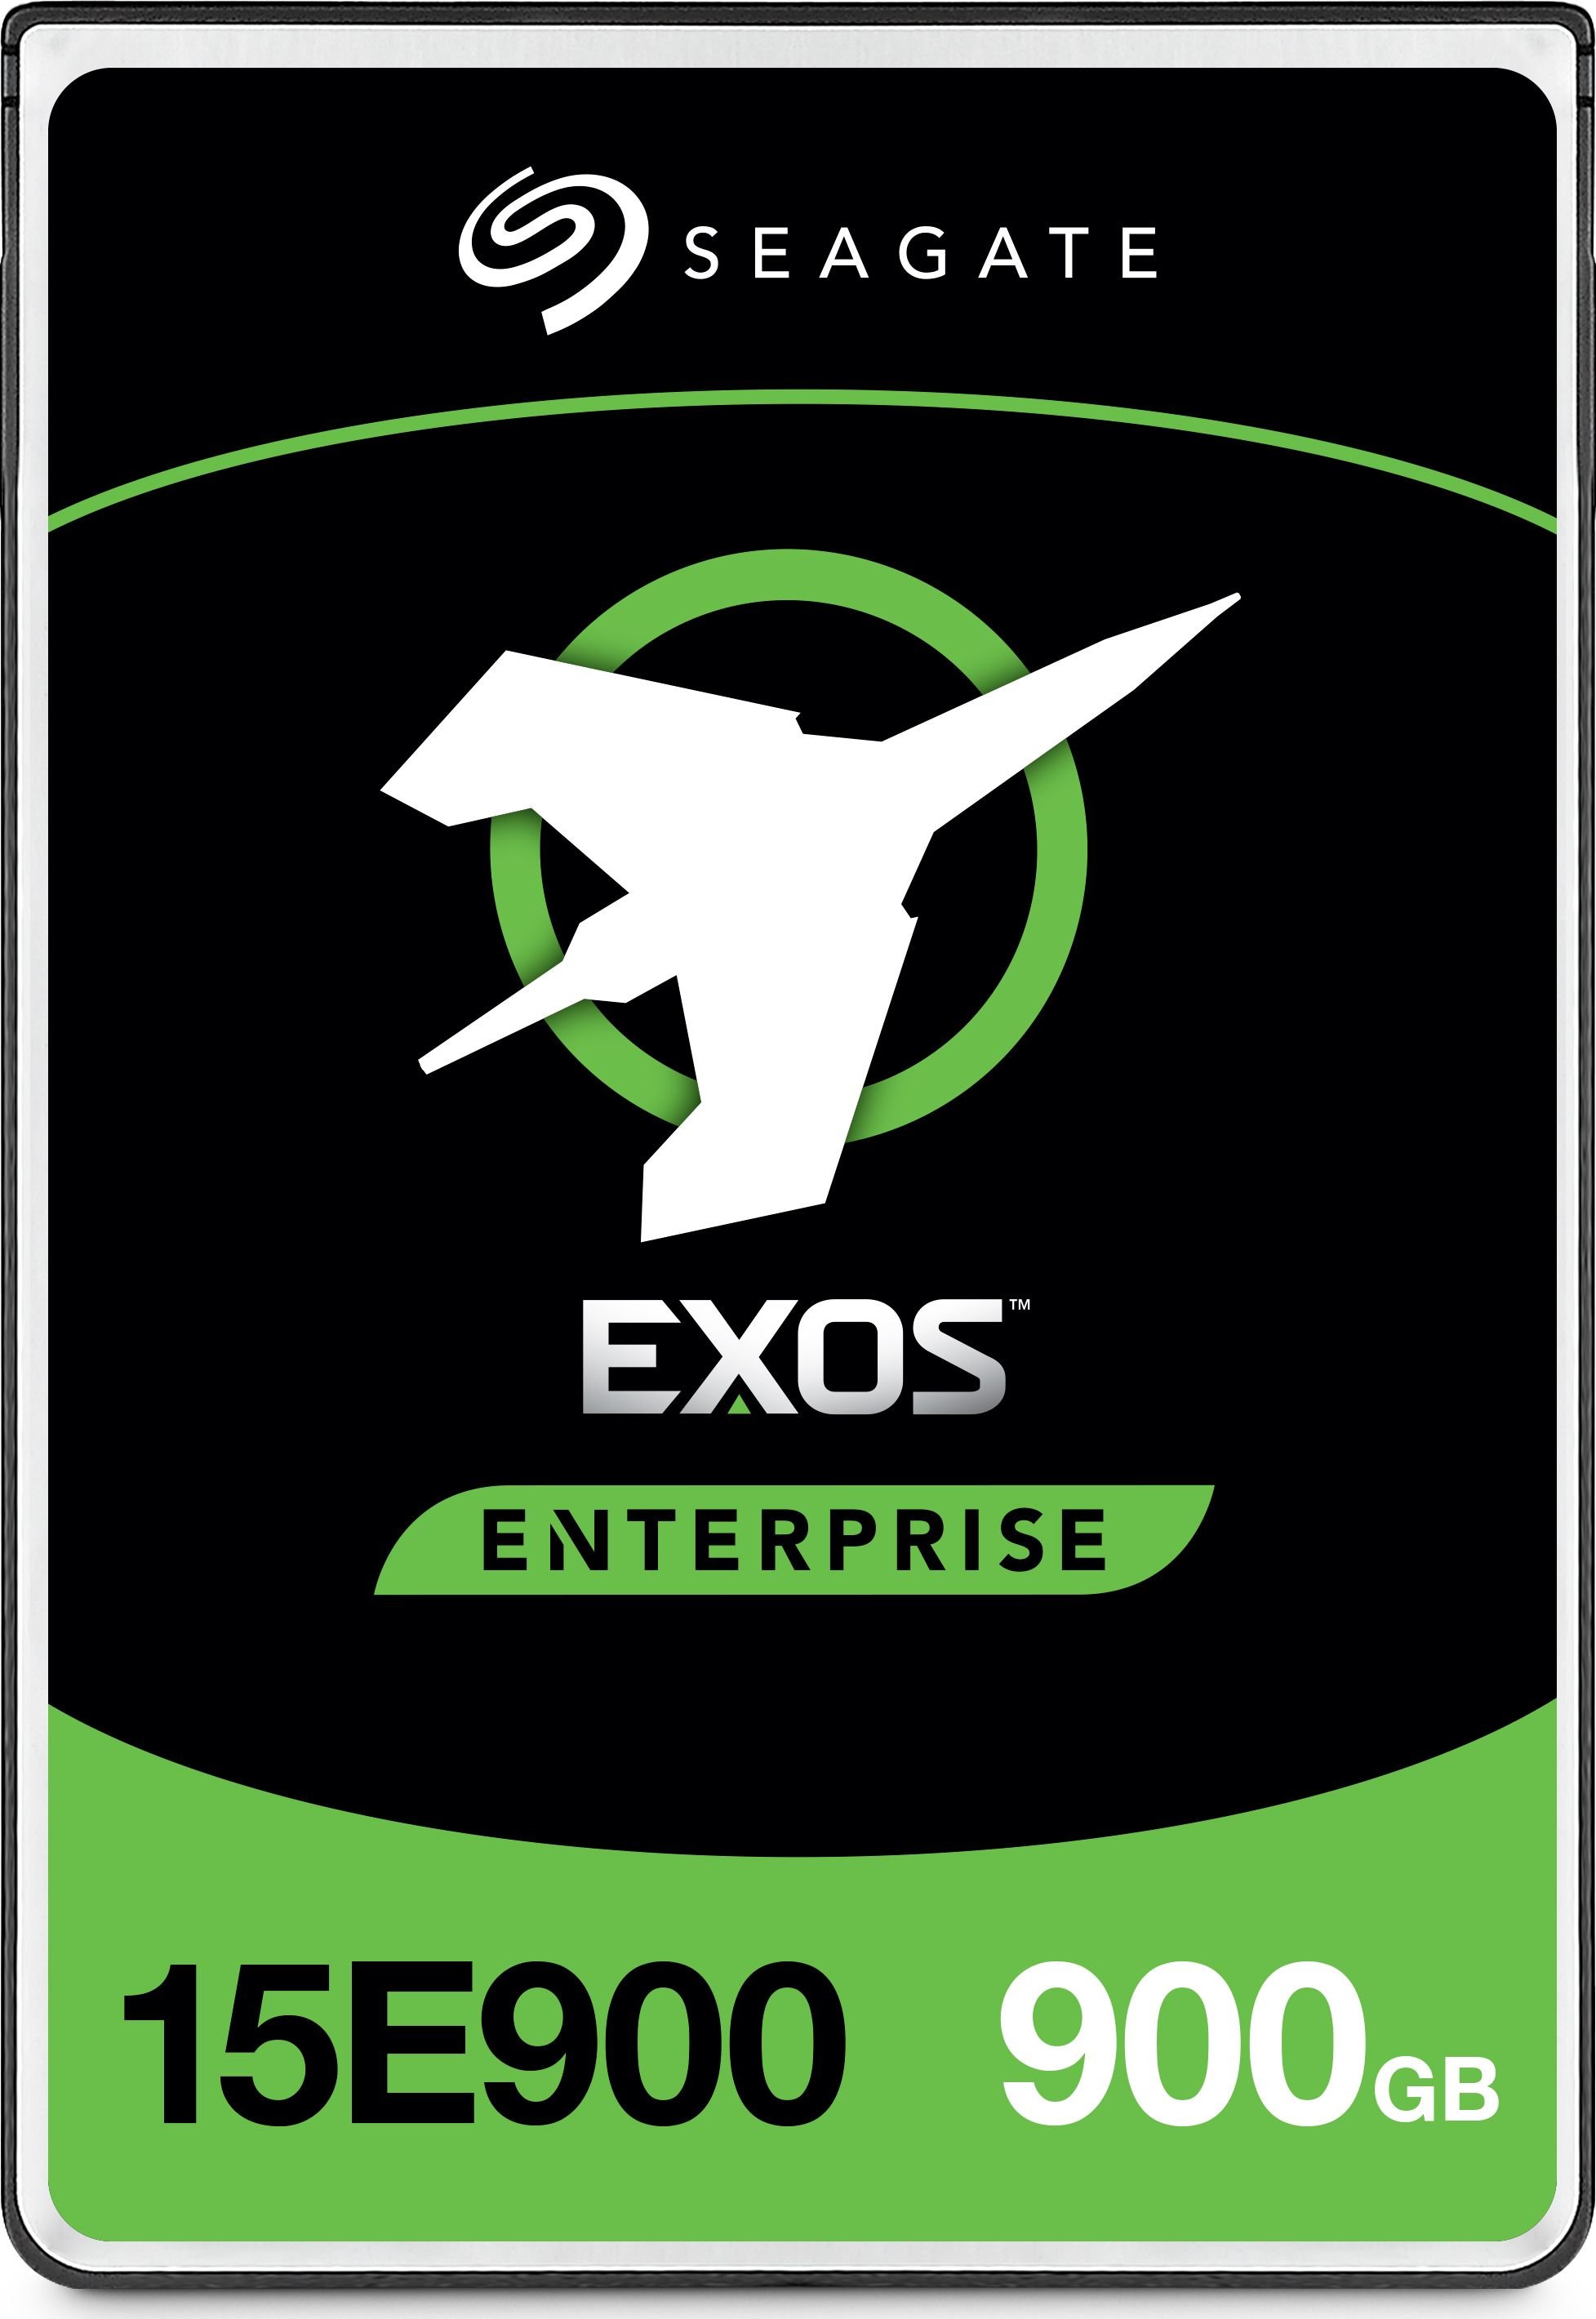 Discul server Seagate Exos 15E900 900GB 2.5' SAS-3 (12Gb/s) (ST900MP0146)